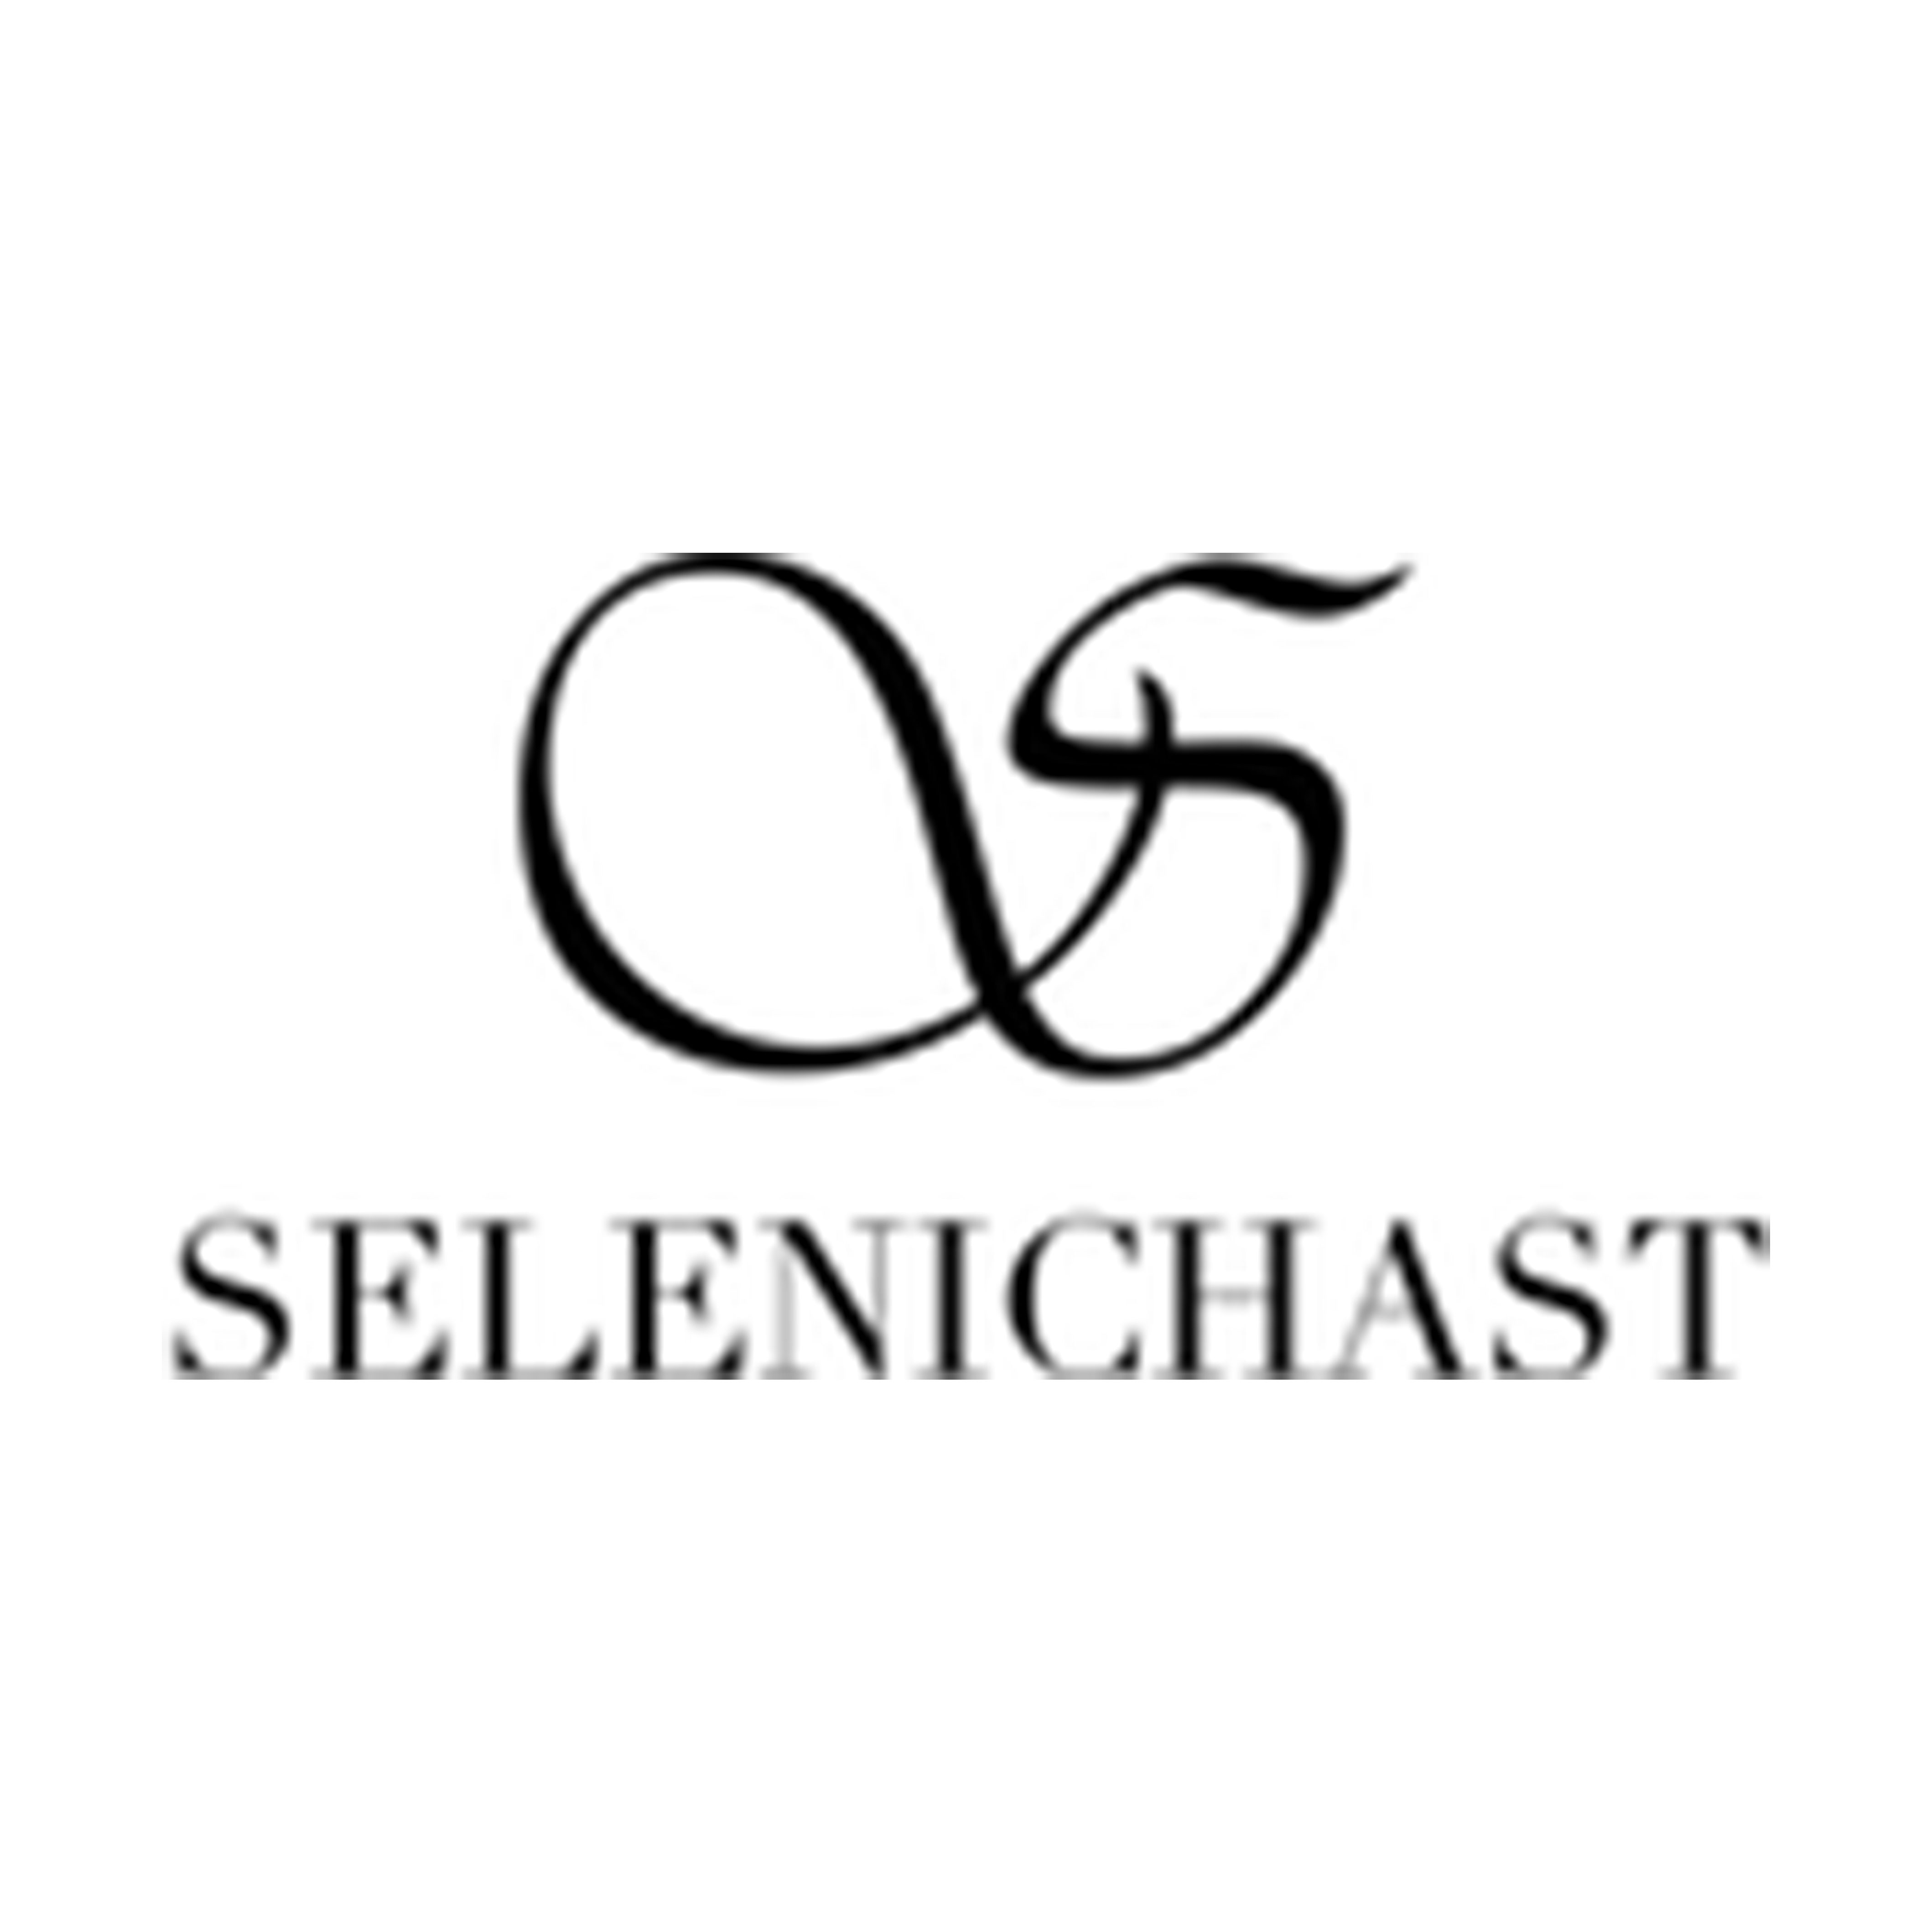 Selenichast logo